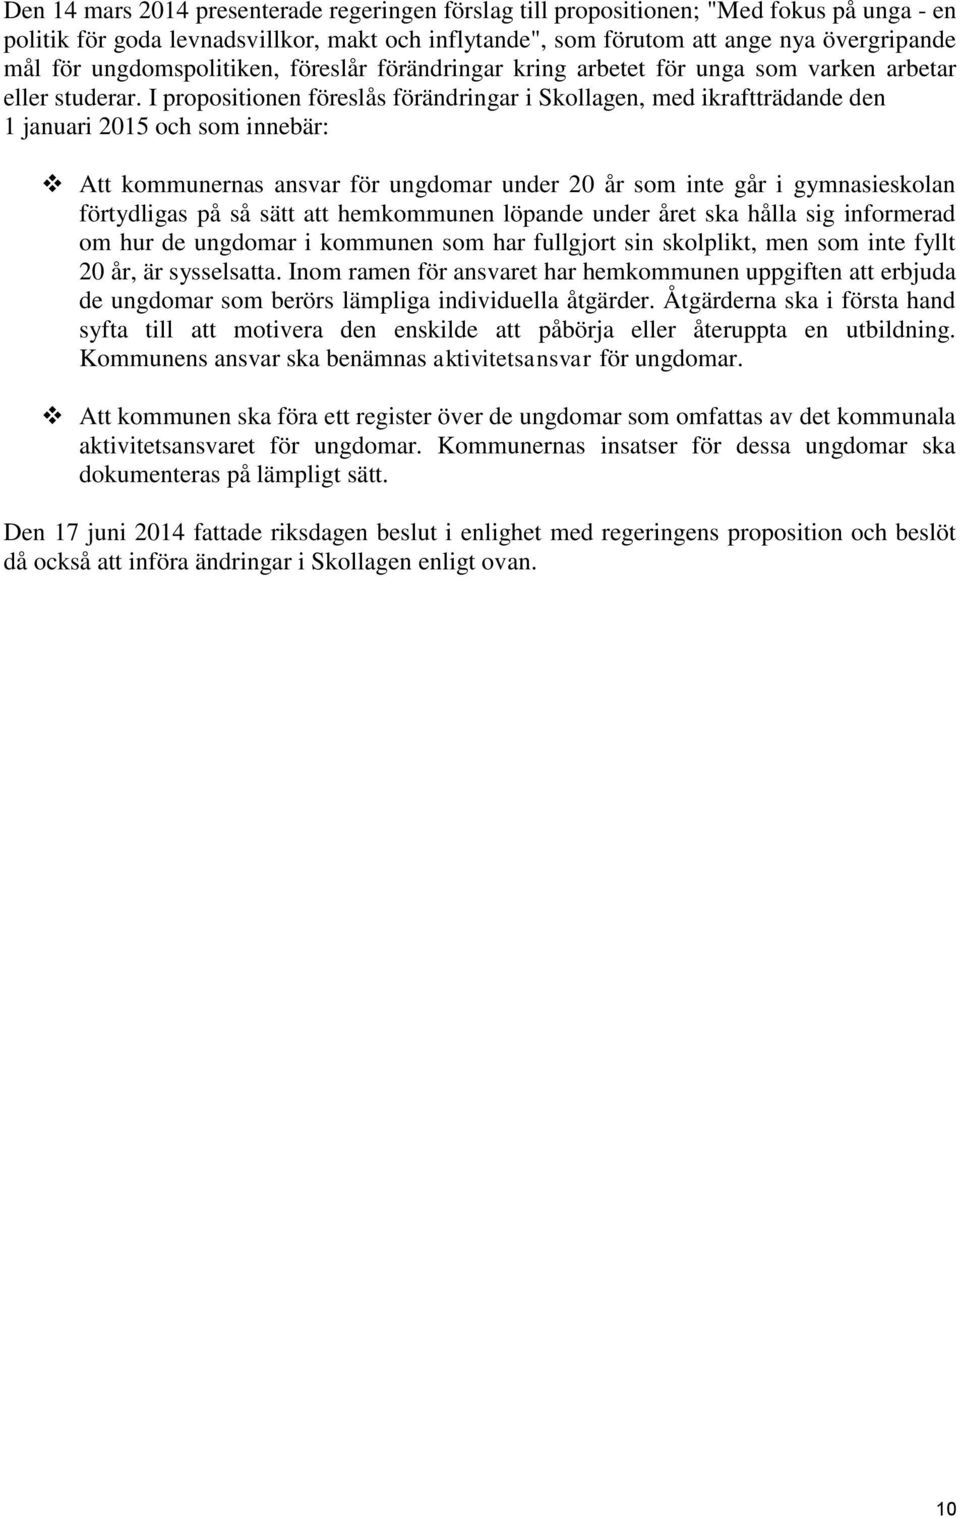 I propositionen föreslås förändringar i Skollagen, med ikraftträdande den 1 januari 2015 och som innebär: Att kommunernas ansvar för ungdomar under 20 år som inte går i gymnasieskolan förtydligas på